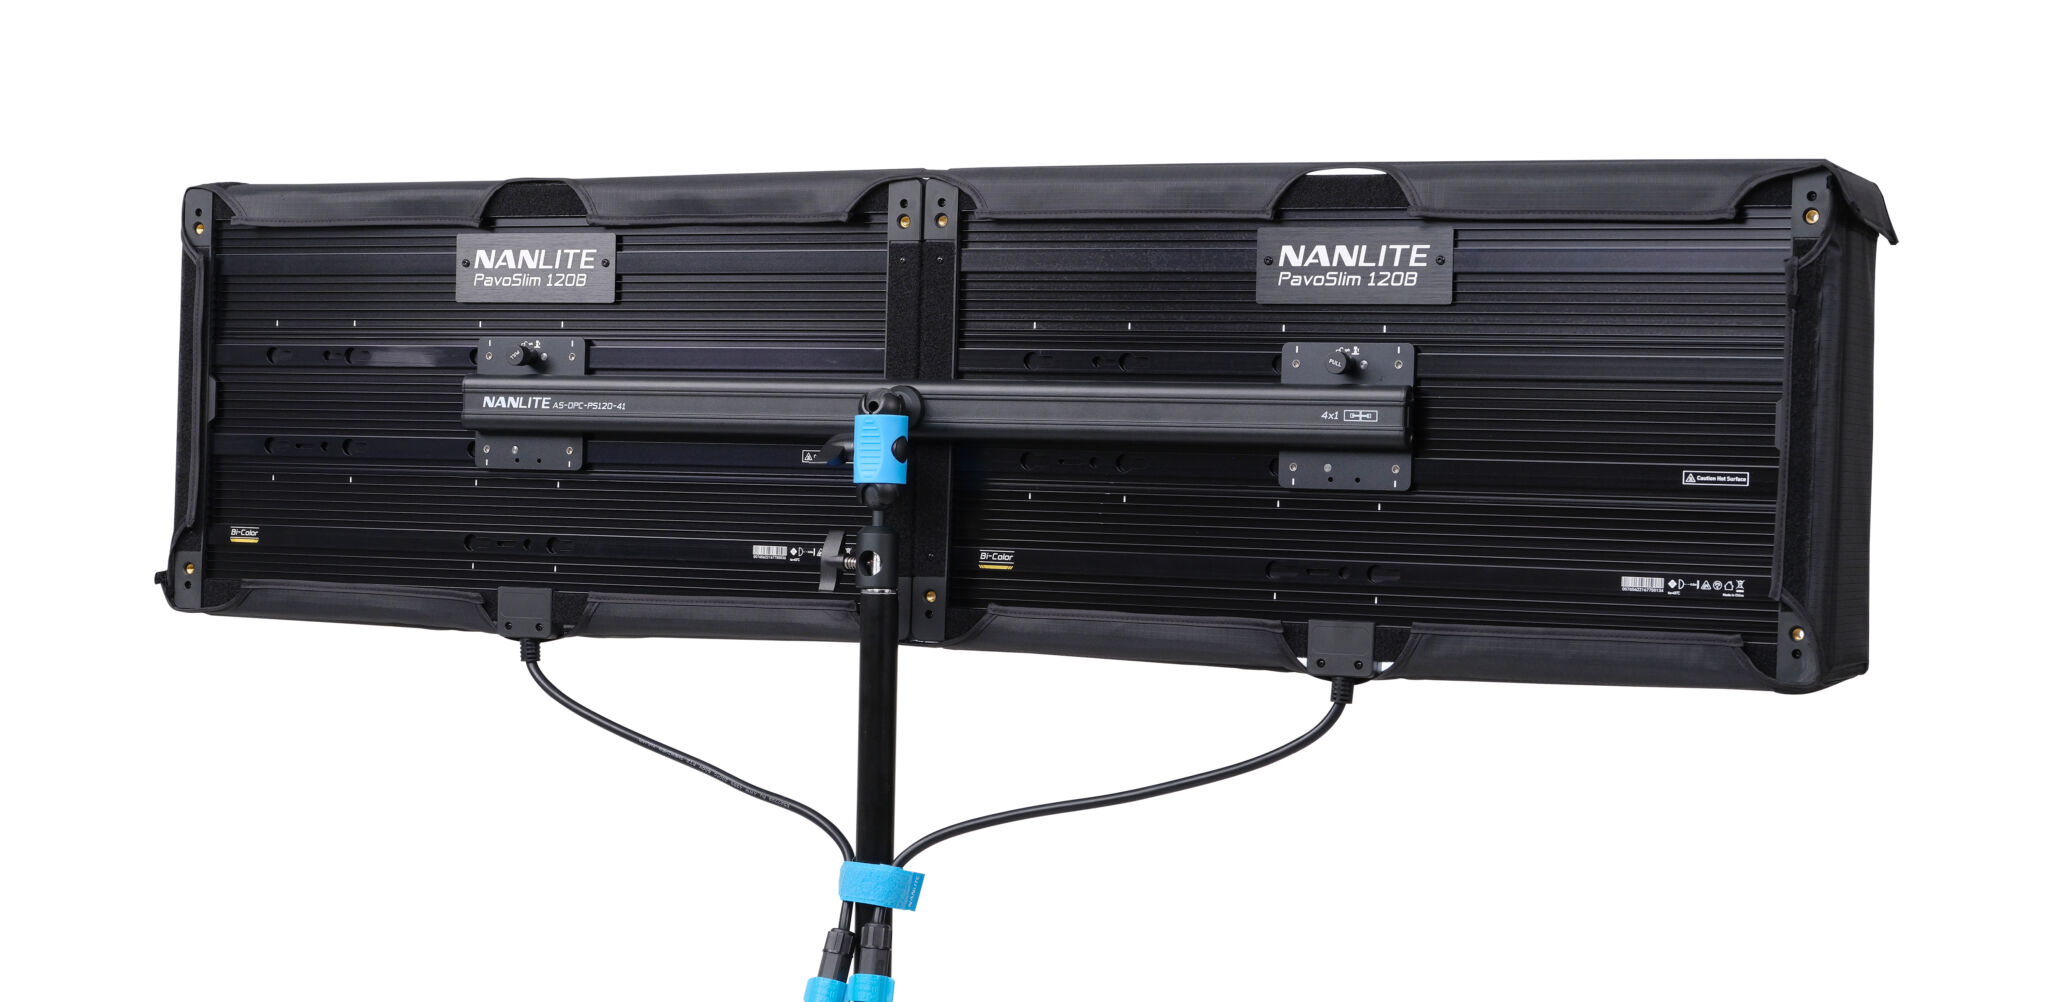 Nanlite Pavoslim 120b C Dual Panel Coupler Kit